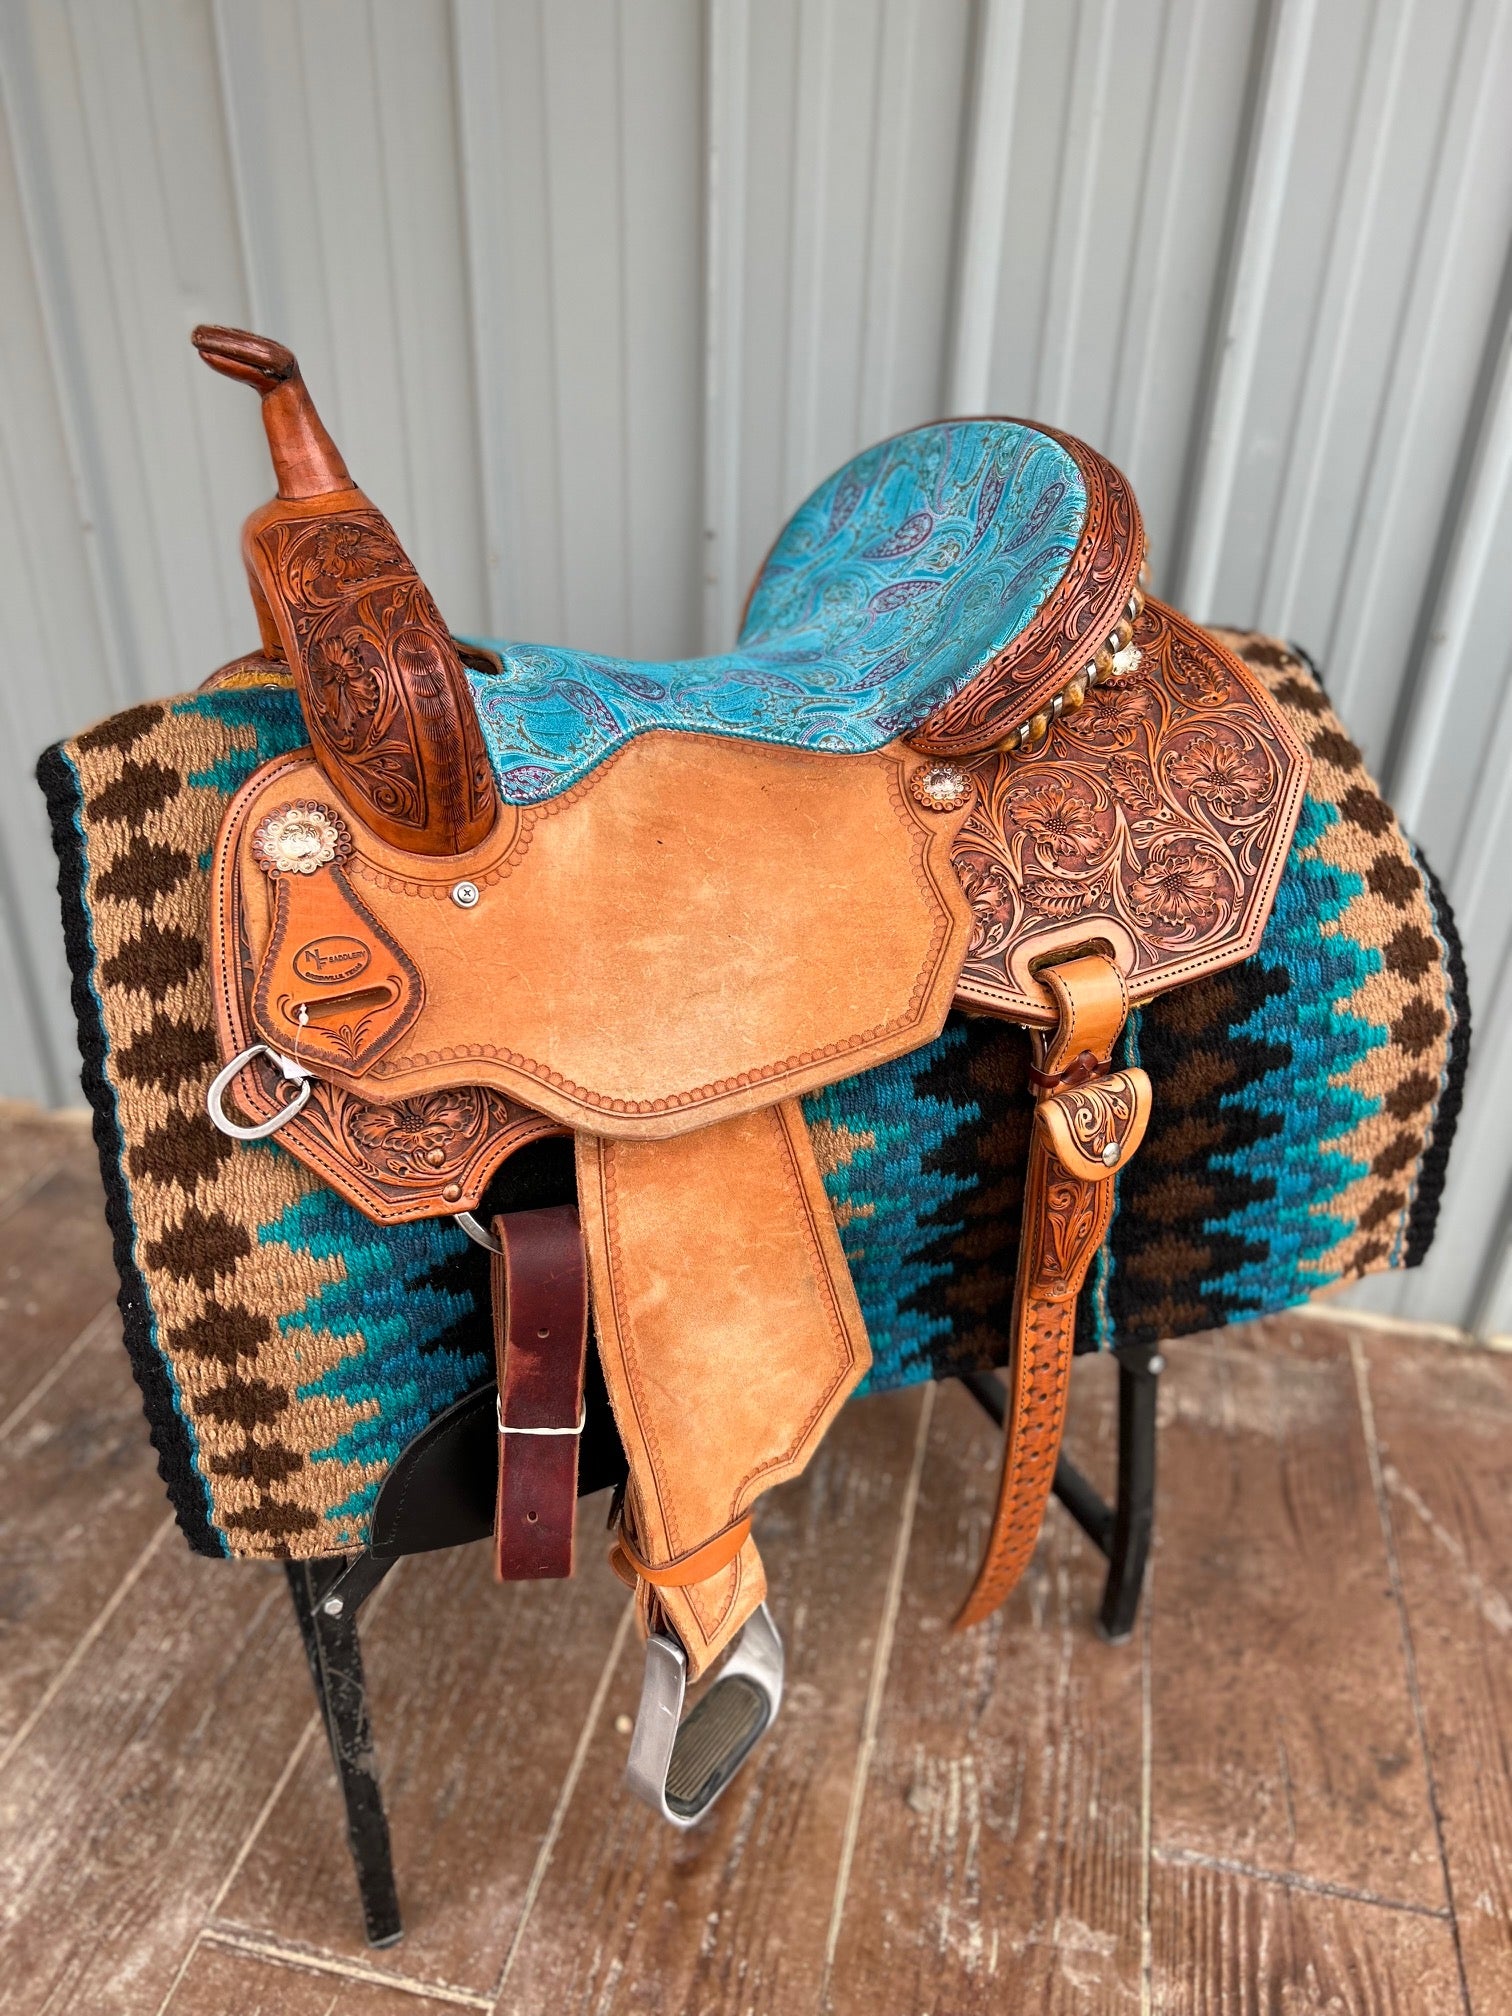 NF Saddlery 16" Floral/Turq Barrel saddle